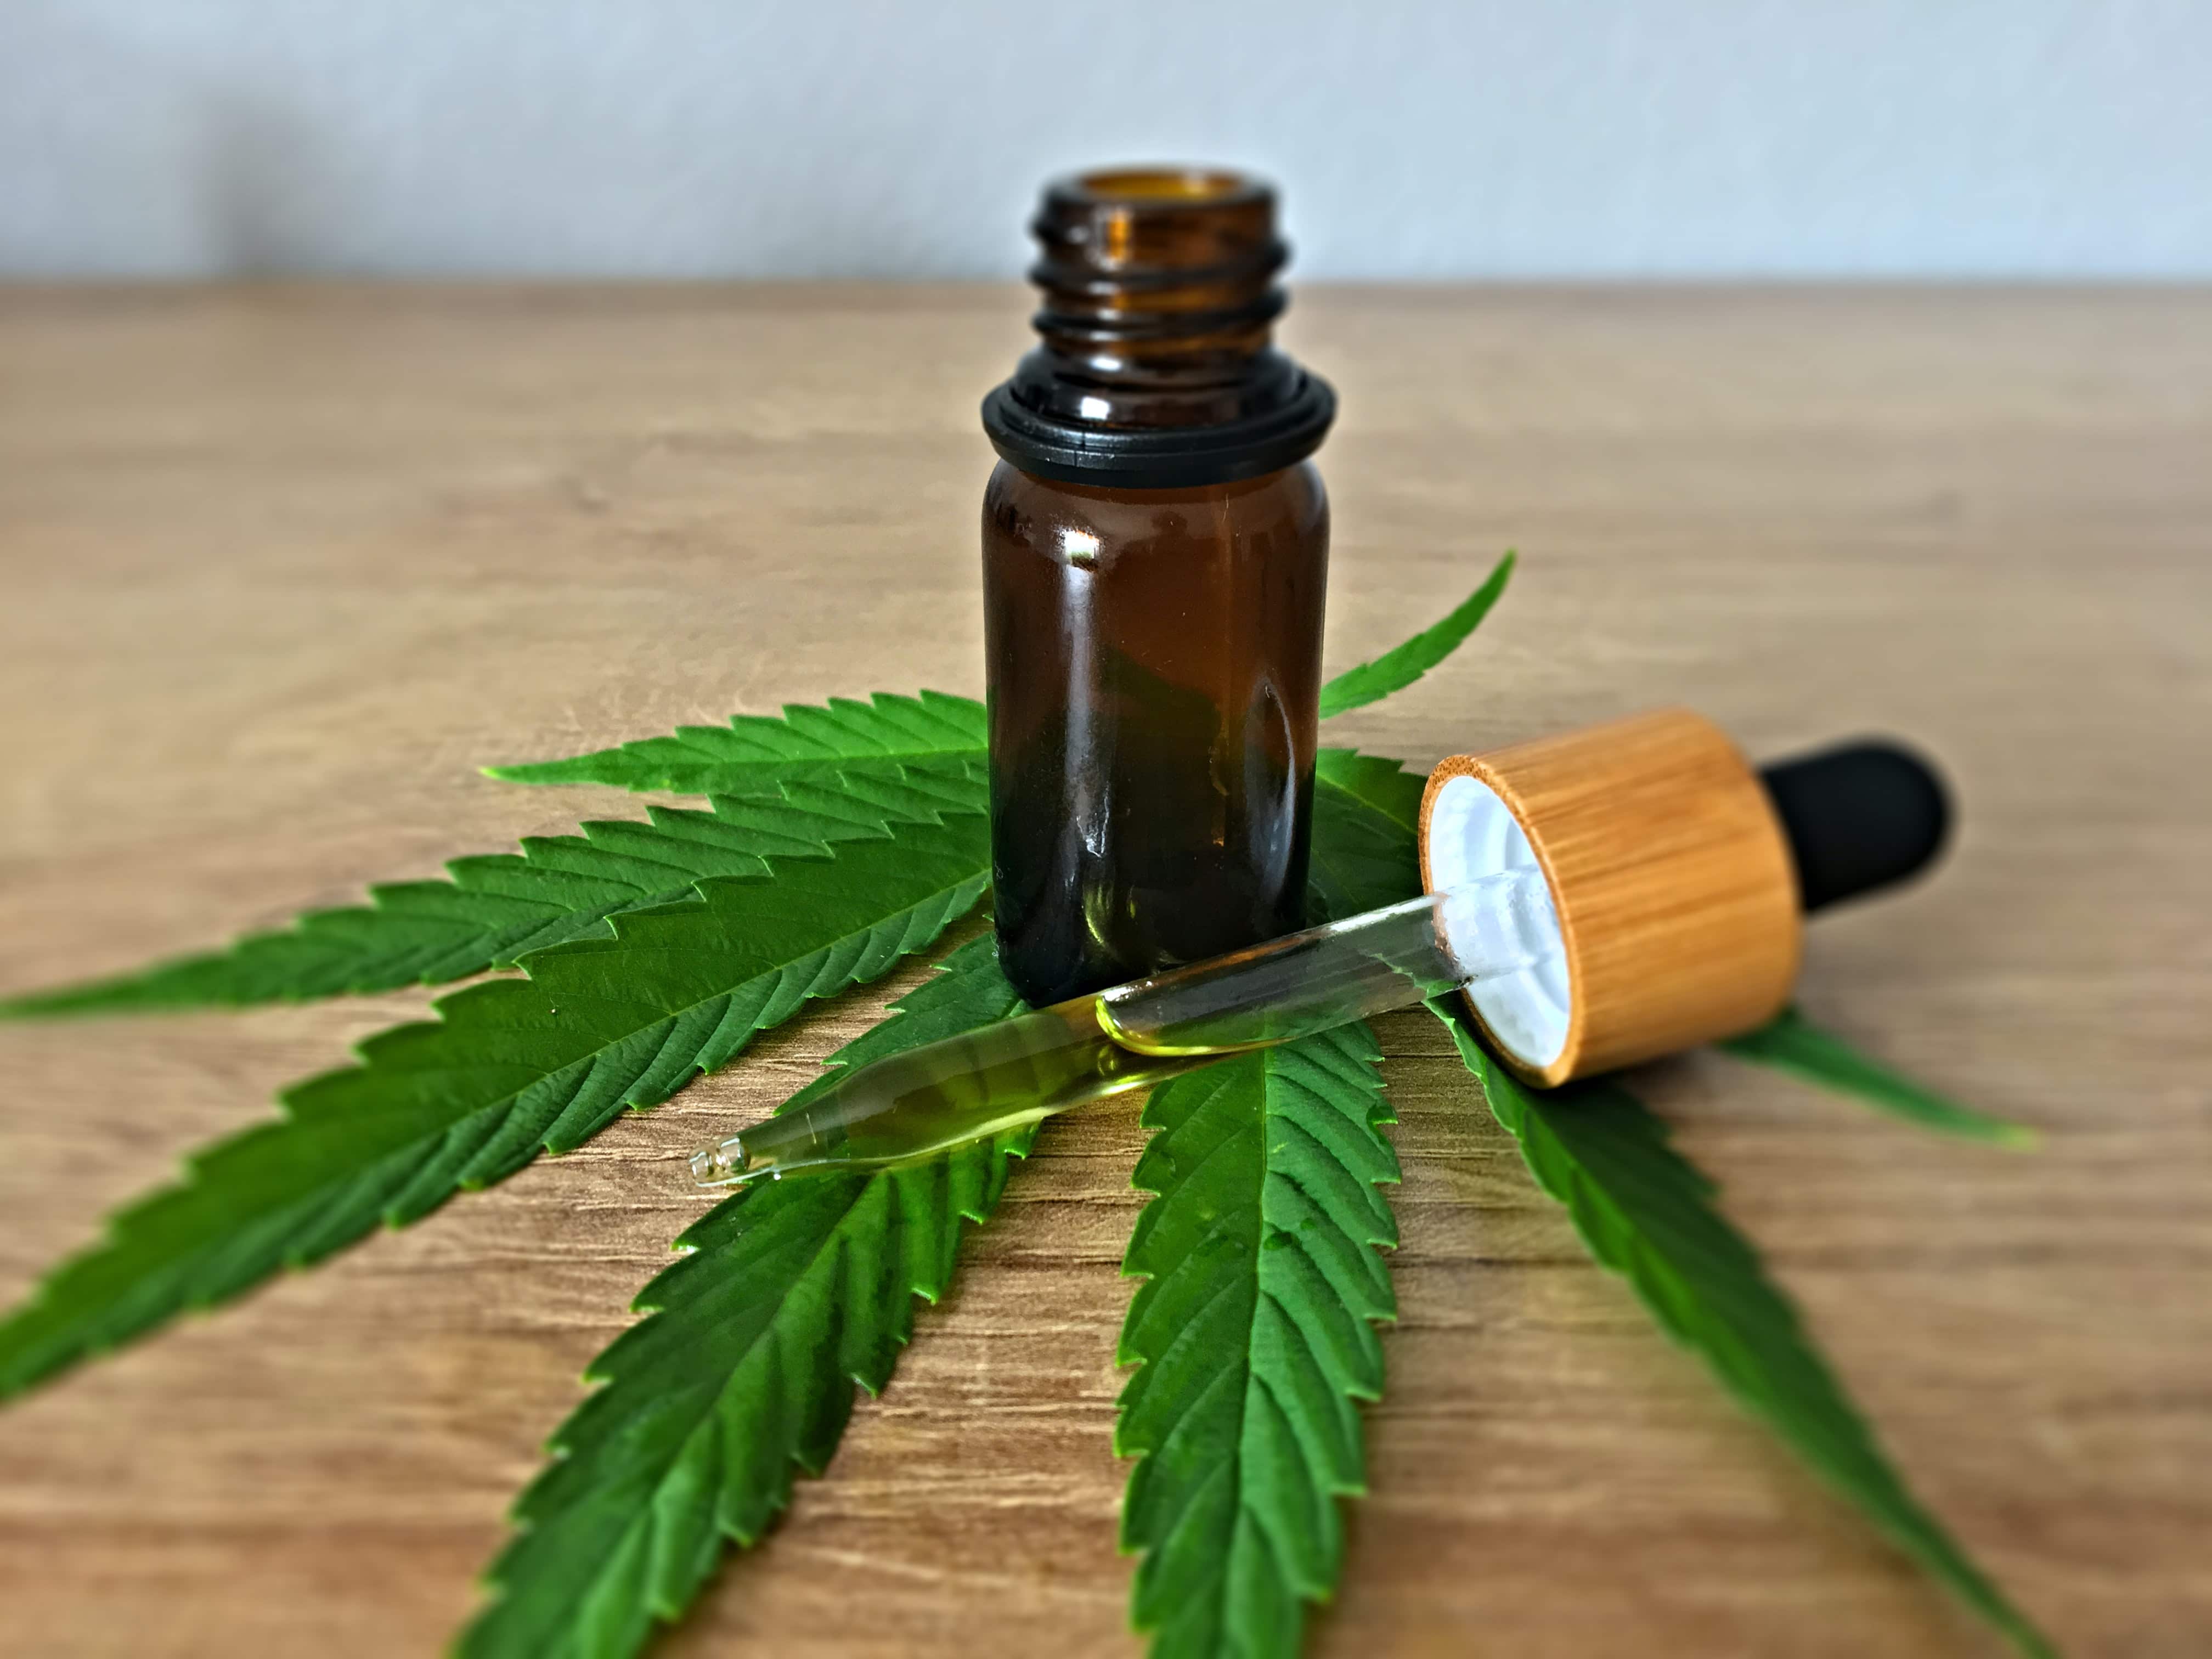 Nación Cannabis | Microdosis: ¿puede ser nociva?